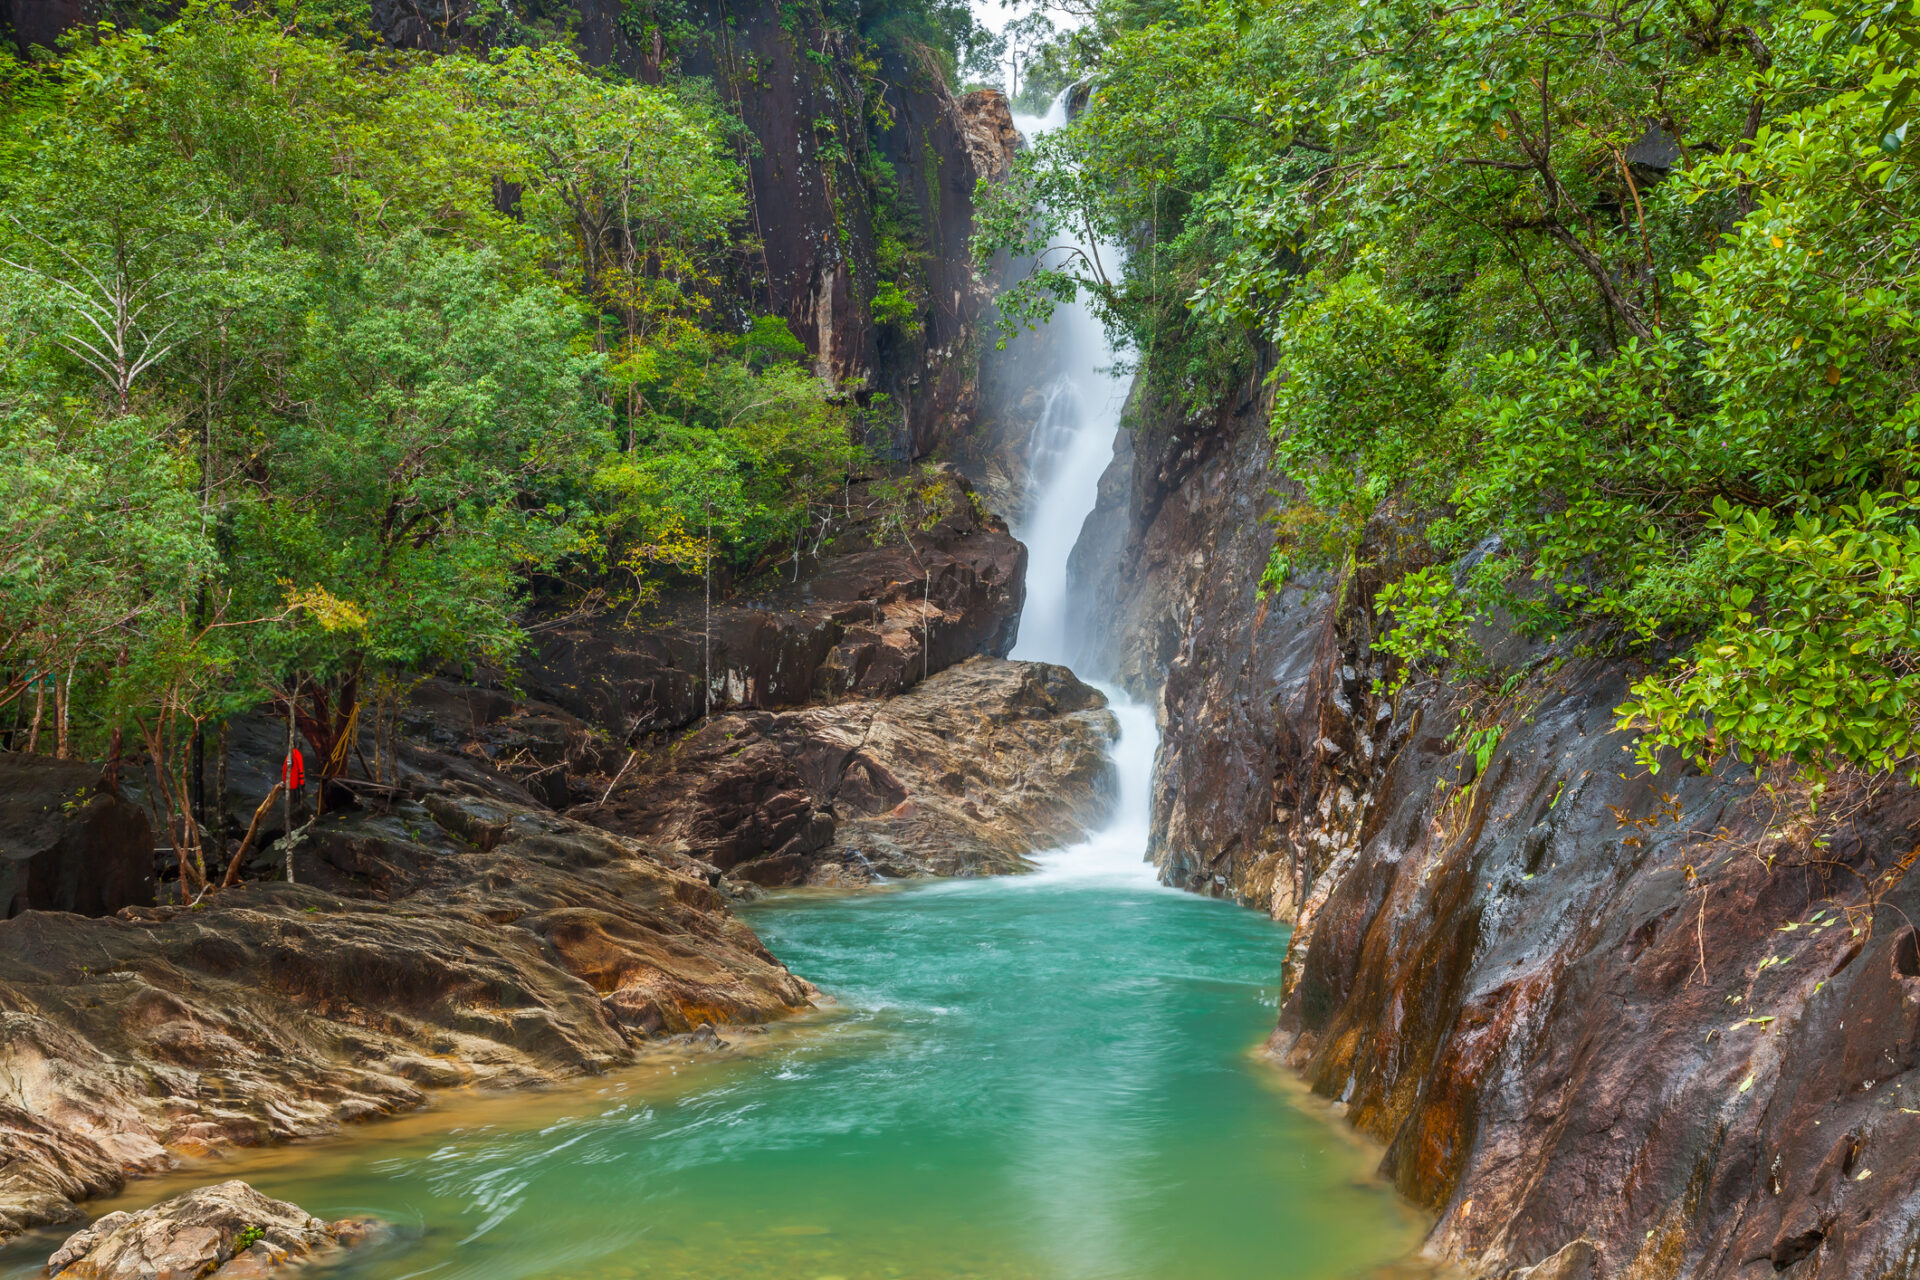  en fredelig vandfald i den frodige jungle på Koh Chang